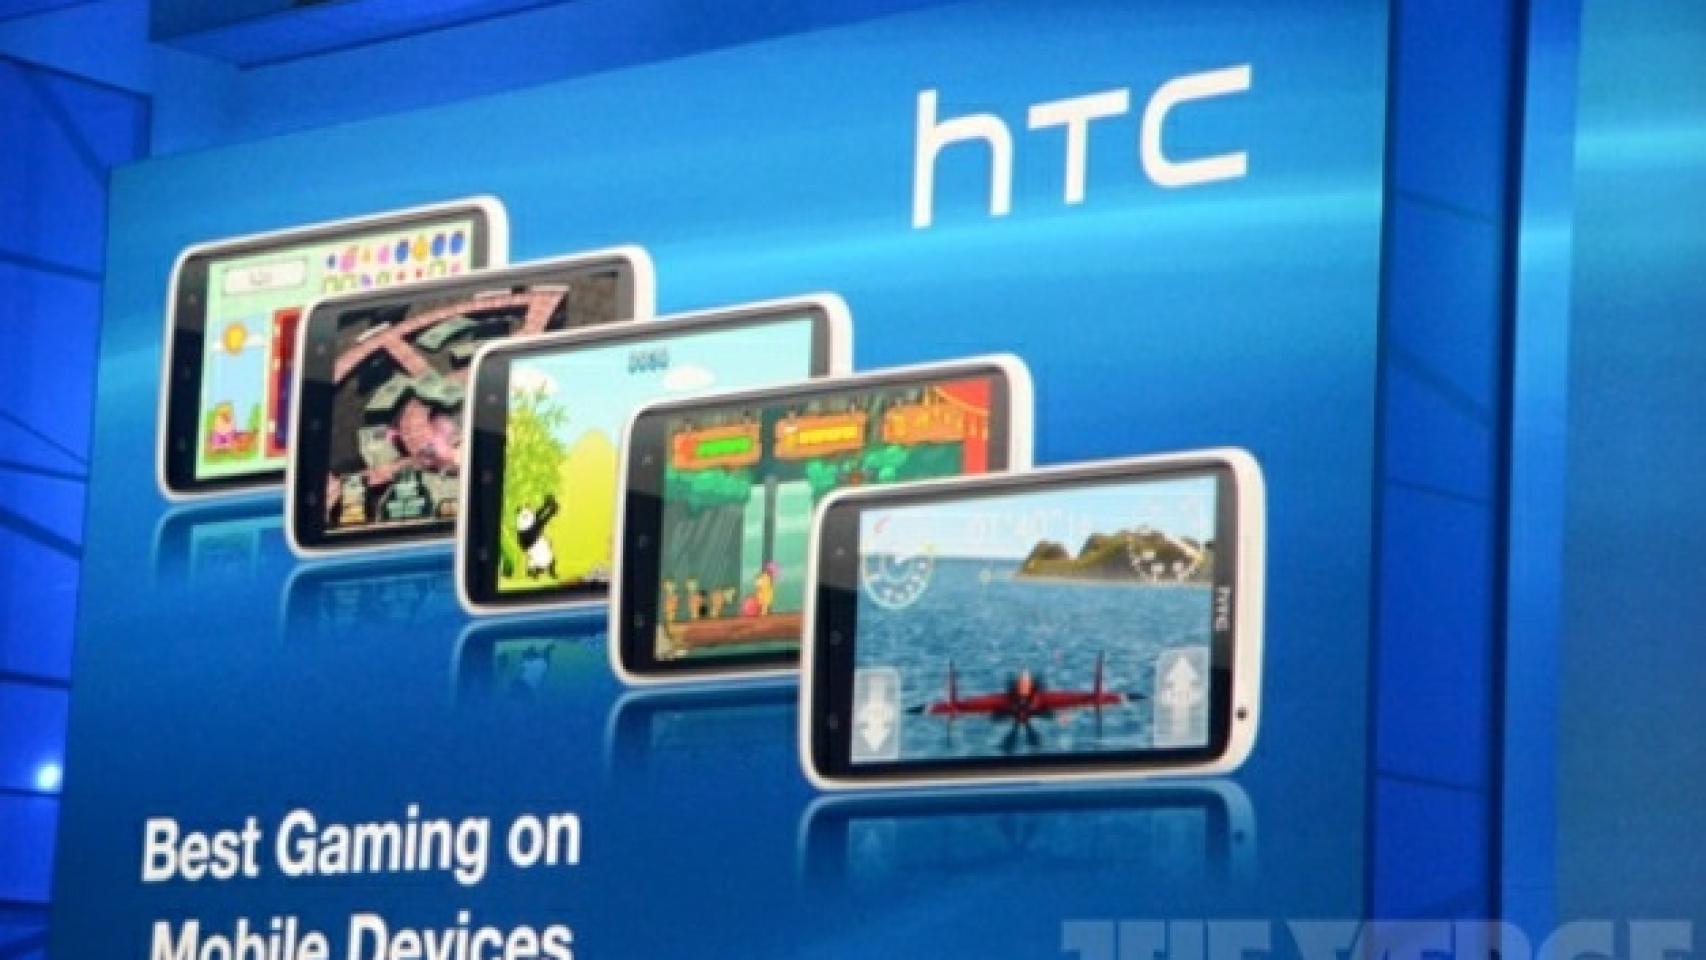 Playstation se asocia con HTC para su plataforma de juegos Playstation Mobile